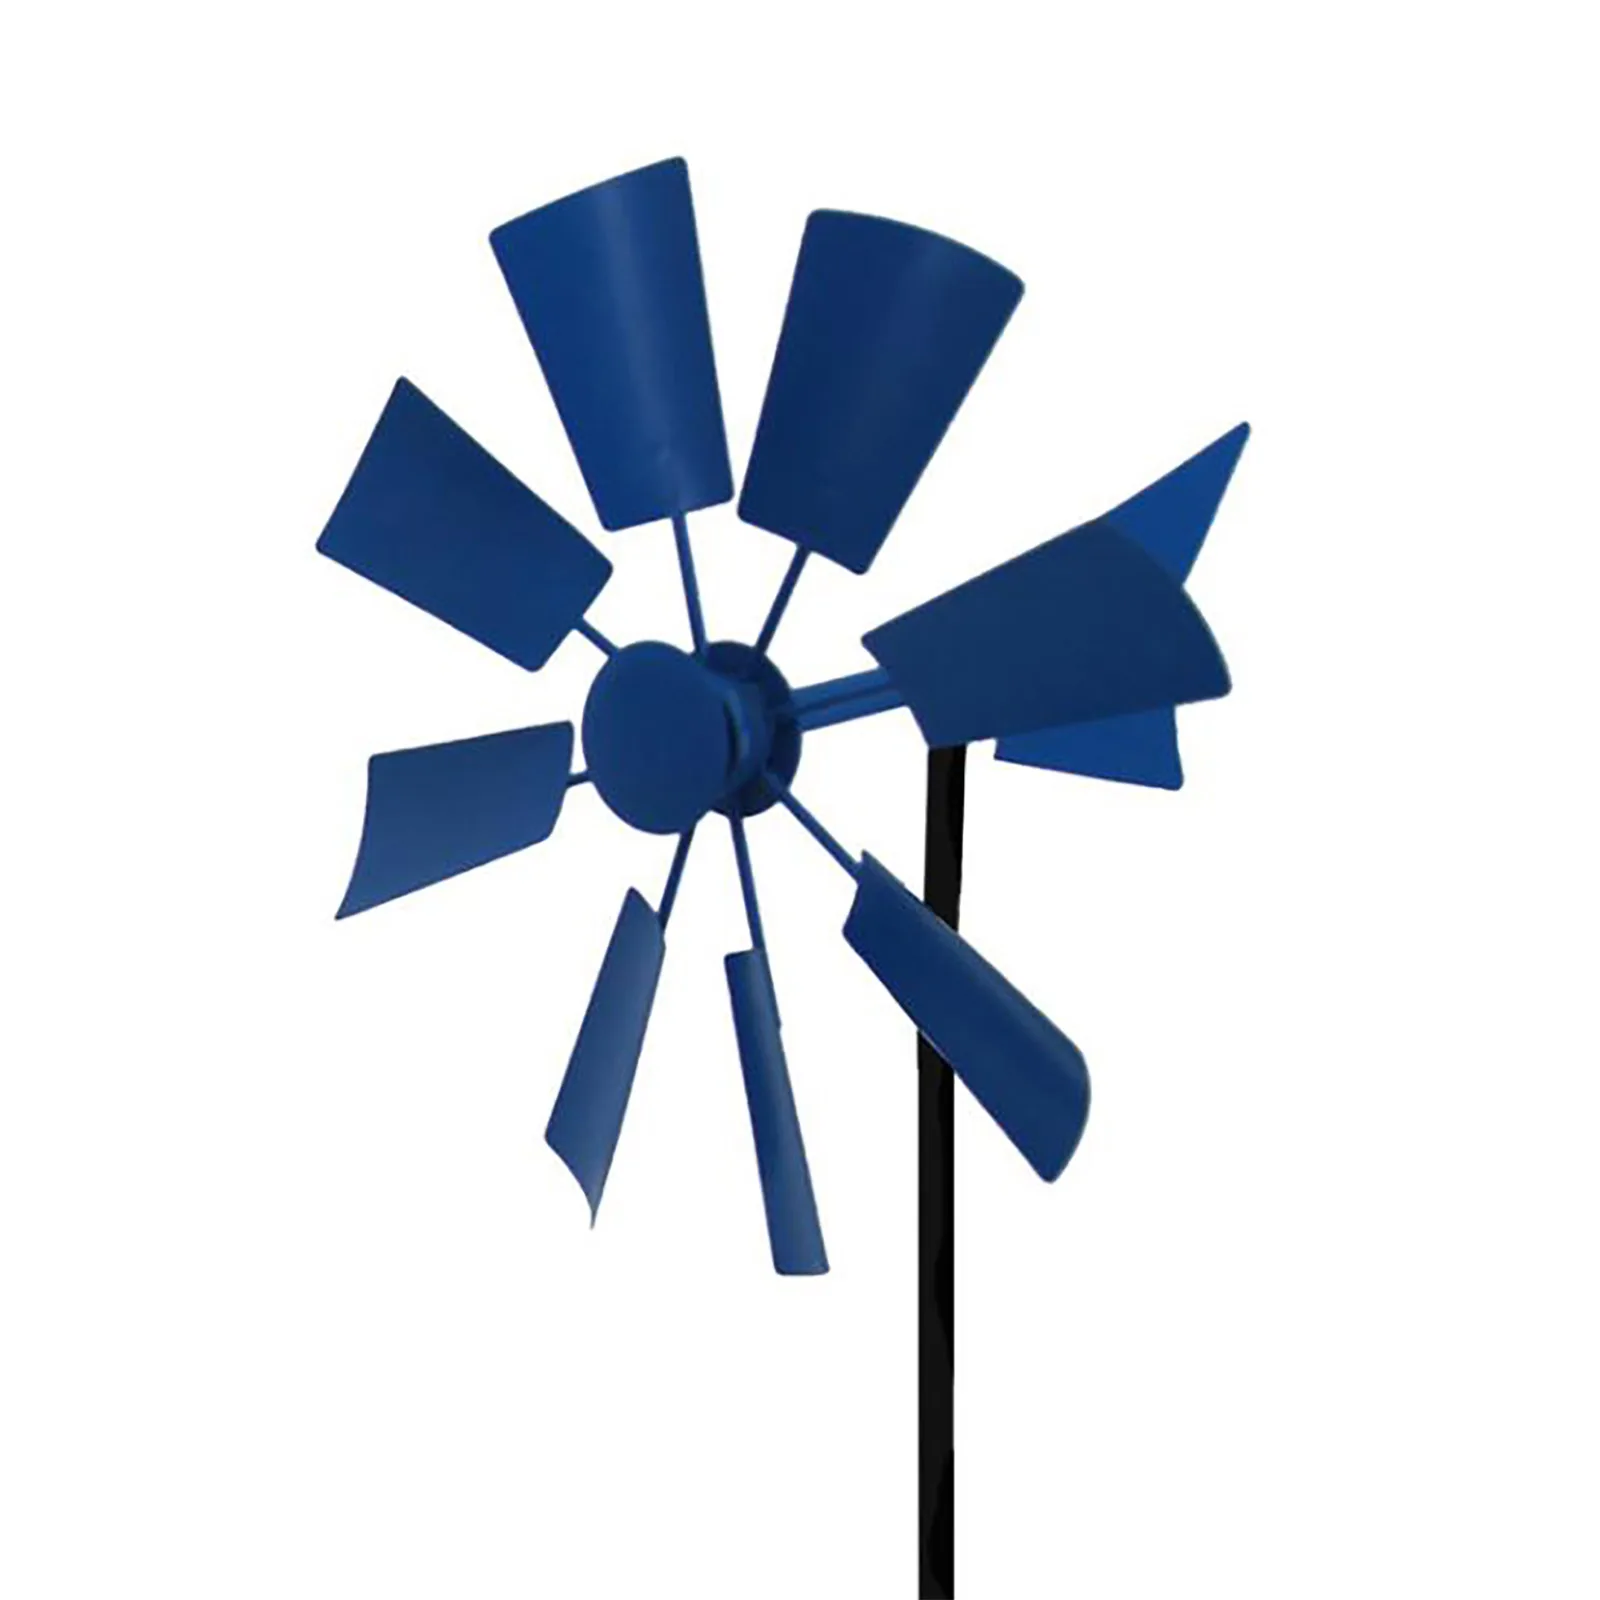 escultura espiral del jardín del metal del viento del molino de viento Spinner ornamento Flor del viento Spinner decoración del jardín del molino de viento multicolor Noche Viento de metal Spinner 